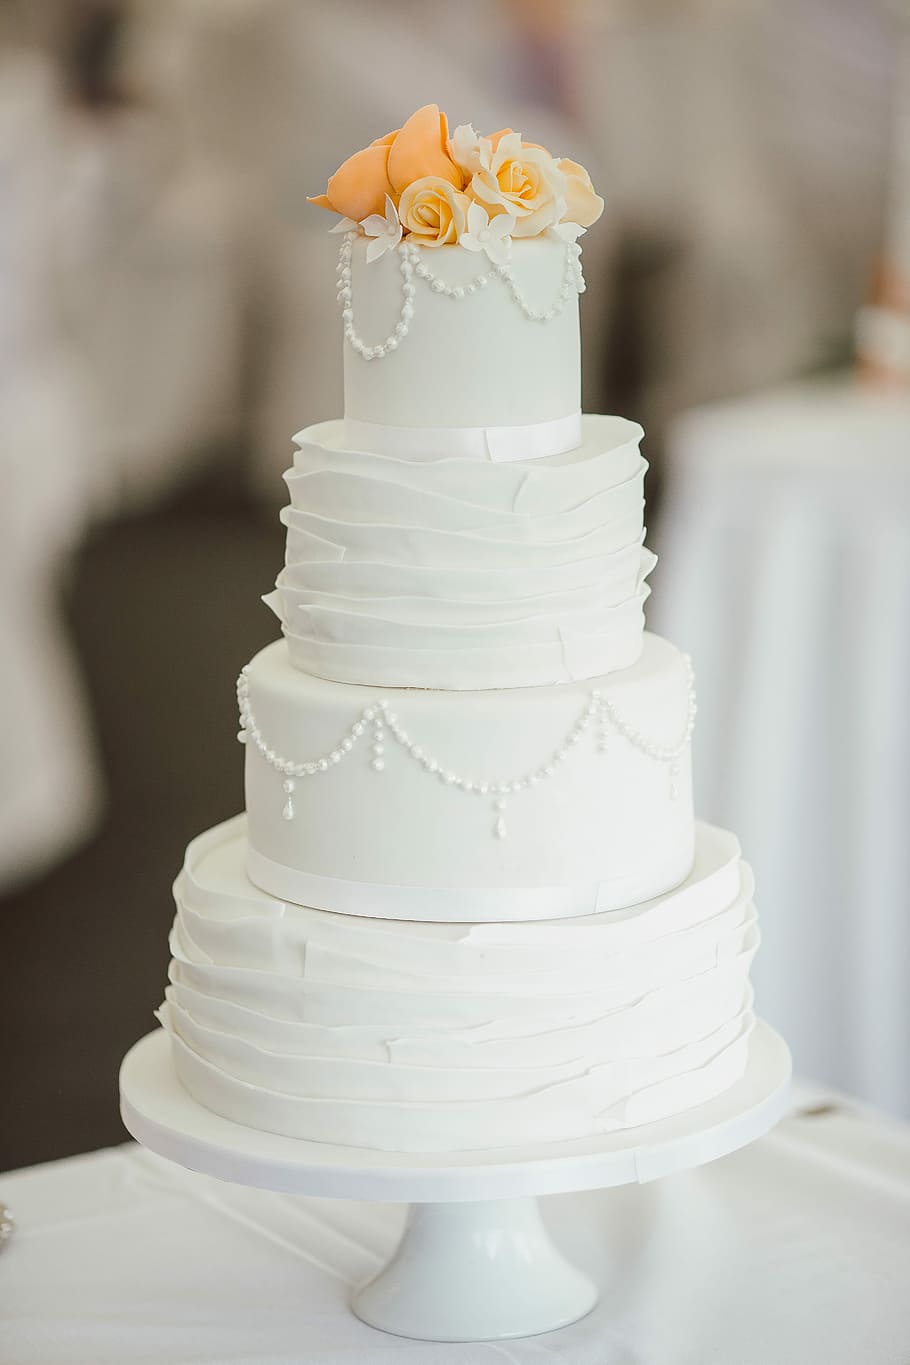 4層, 4層のケーキ, テーブル, ウェディングケーキ, 食品, 装飾, 白, 結婚, お祝い, パーティー